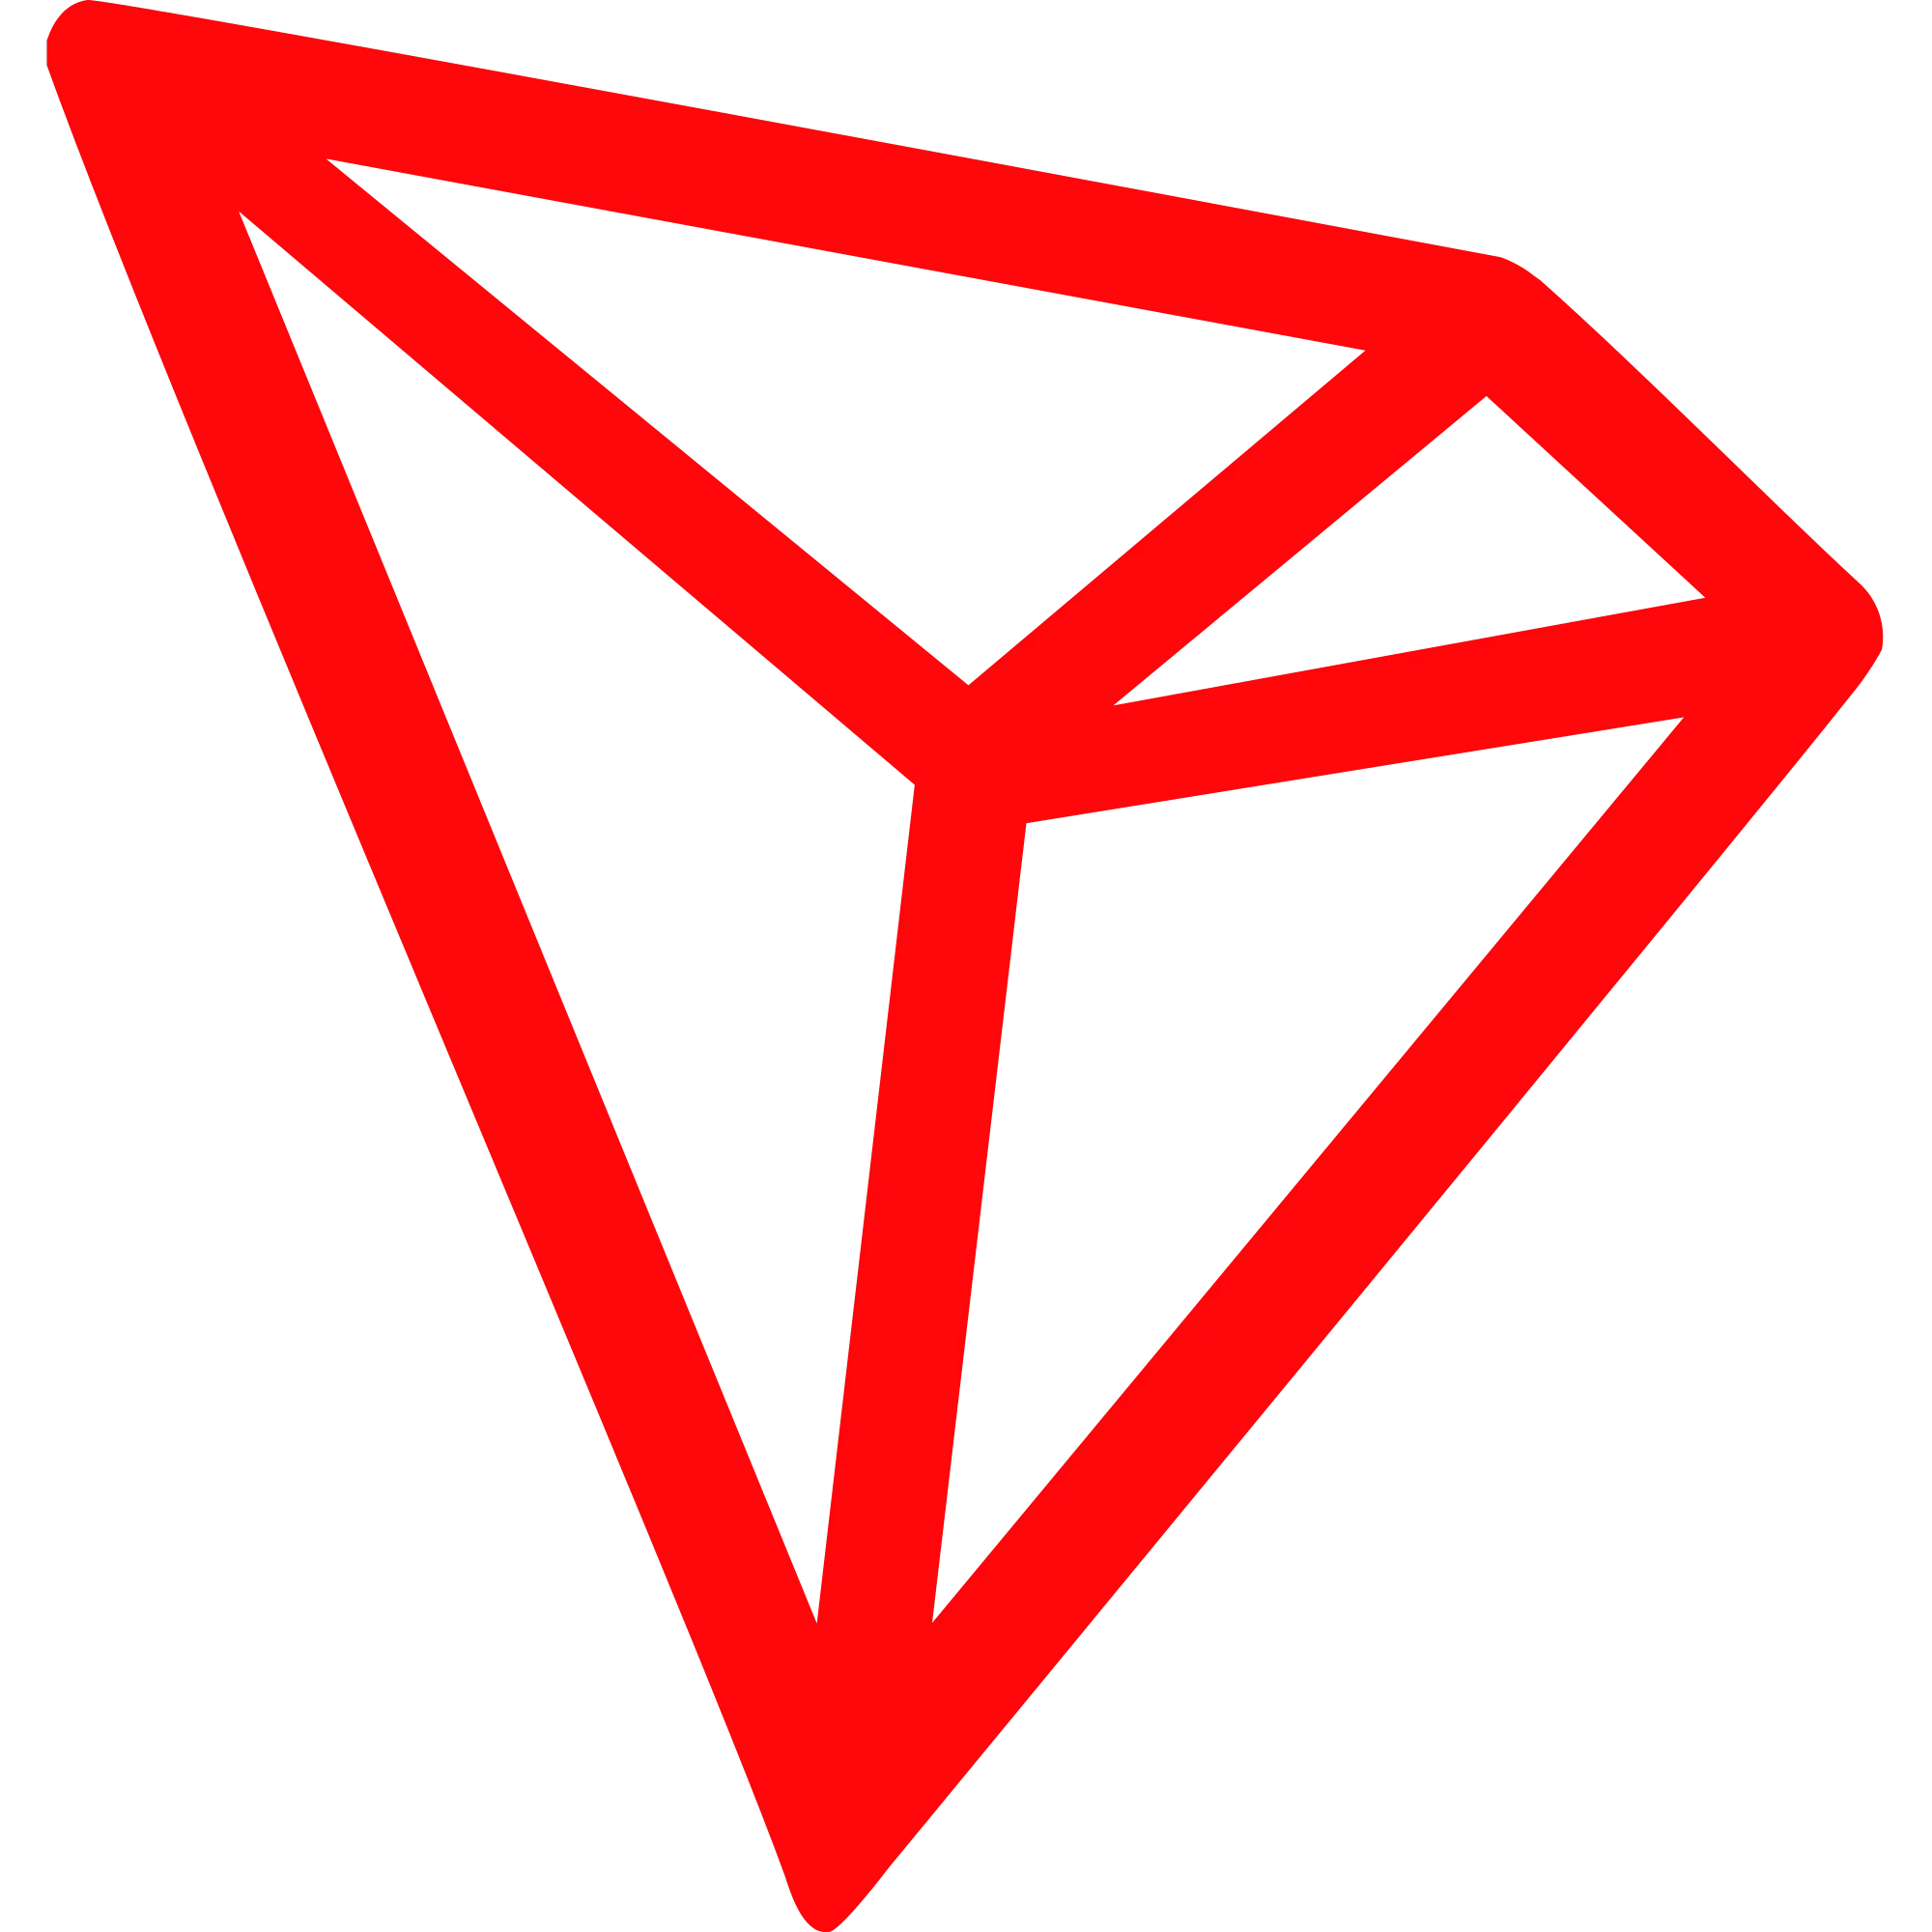 TRON (TRX) logo